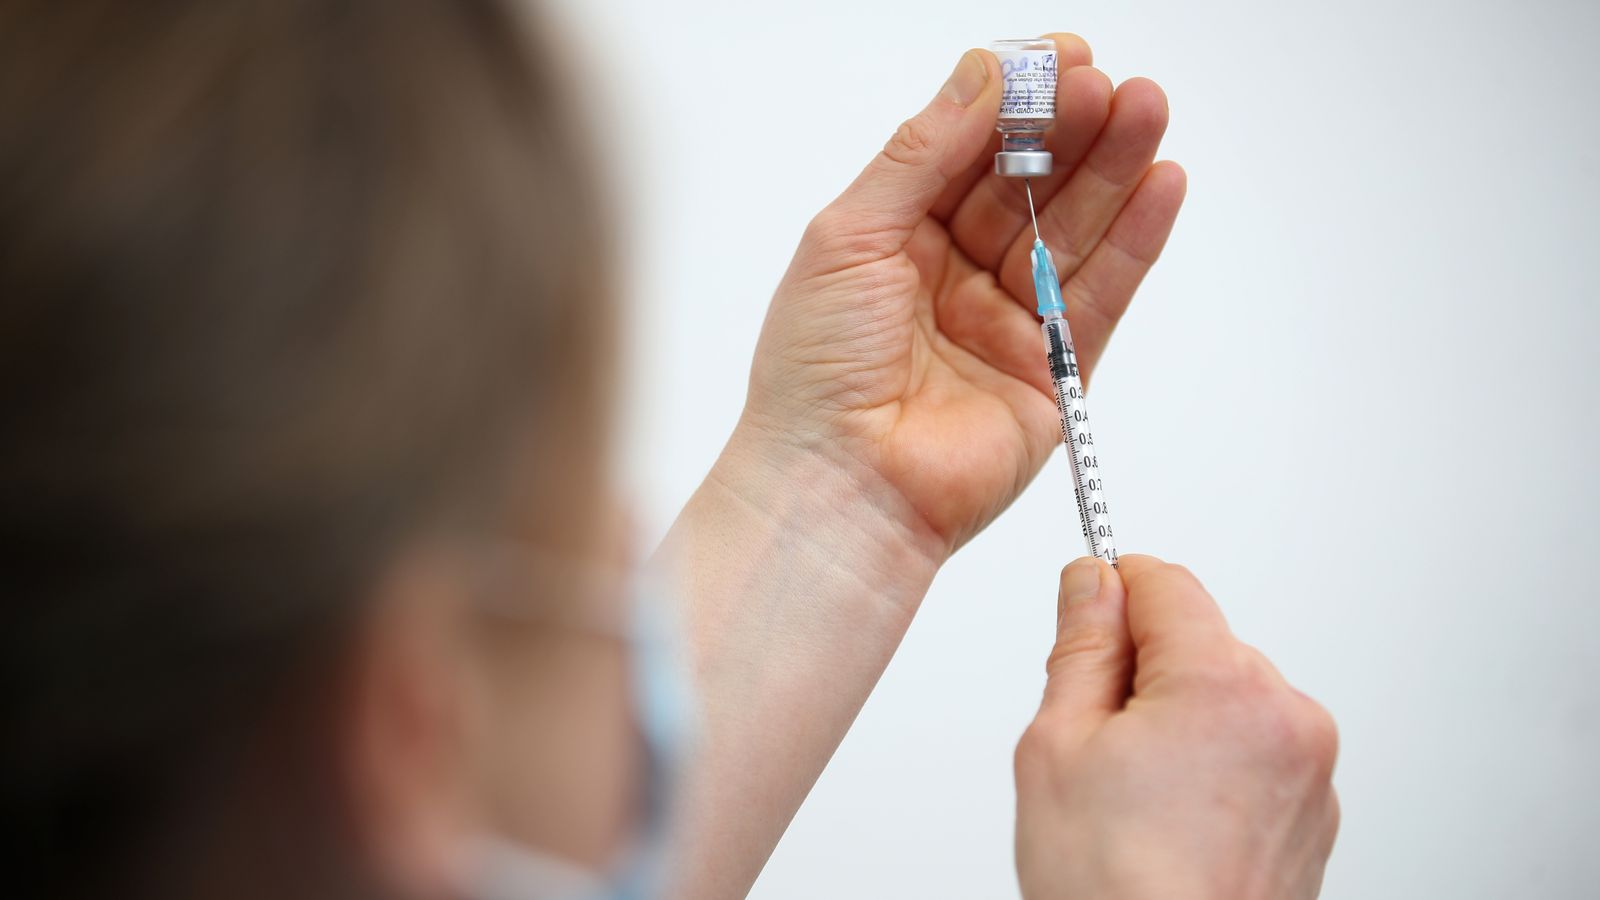 COVID-19: Pemerintah Inggris mengamankan 114 juta dosis vaksin lagi untuk dua tahun ke depan karena kasus varian baru Omicron meningkat |  Berita Inggris